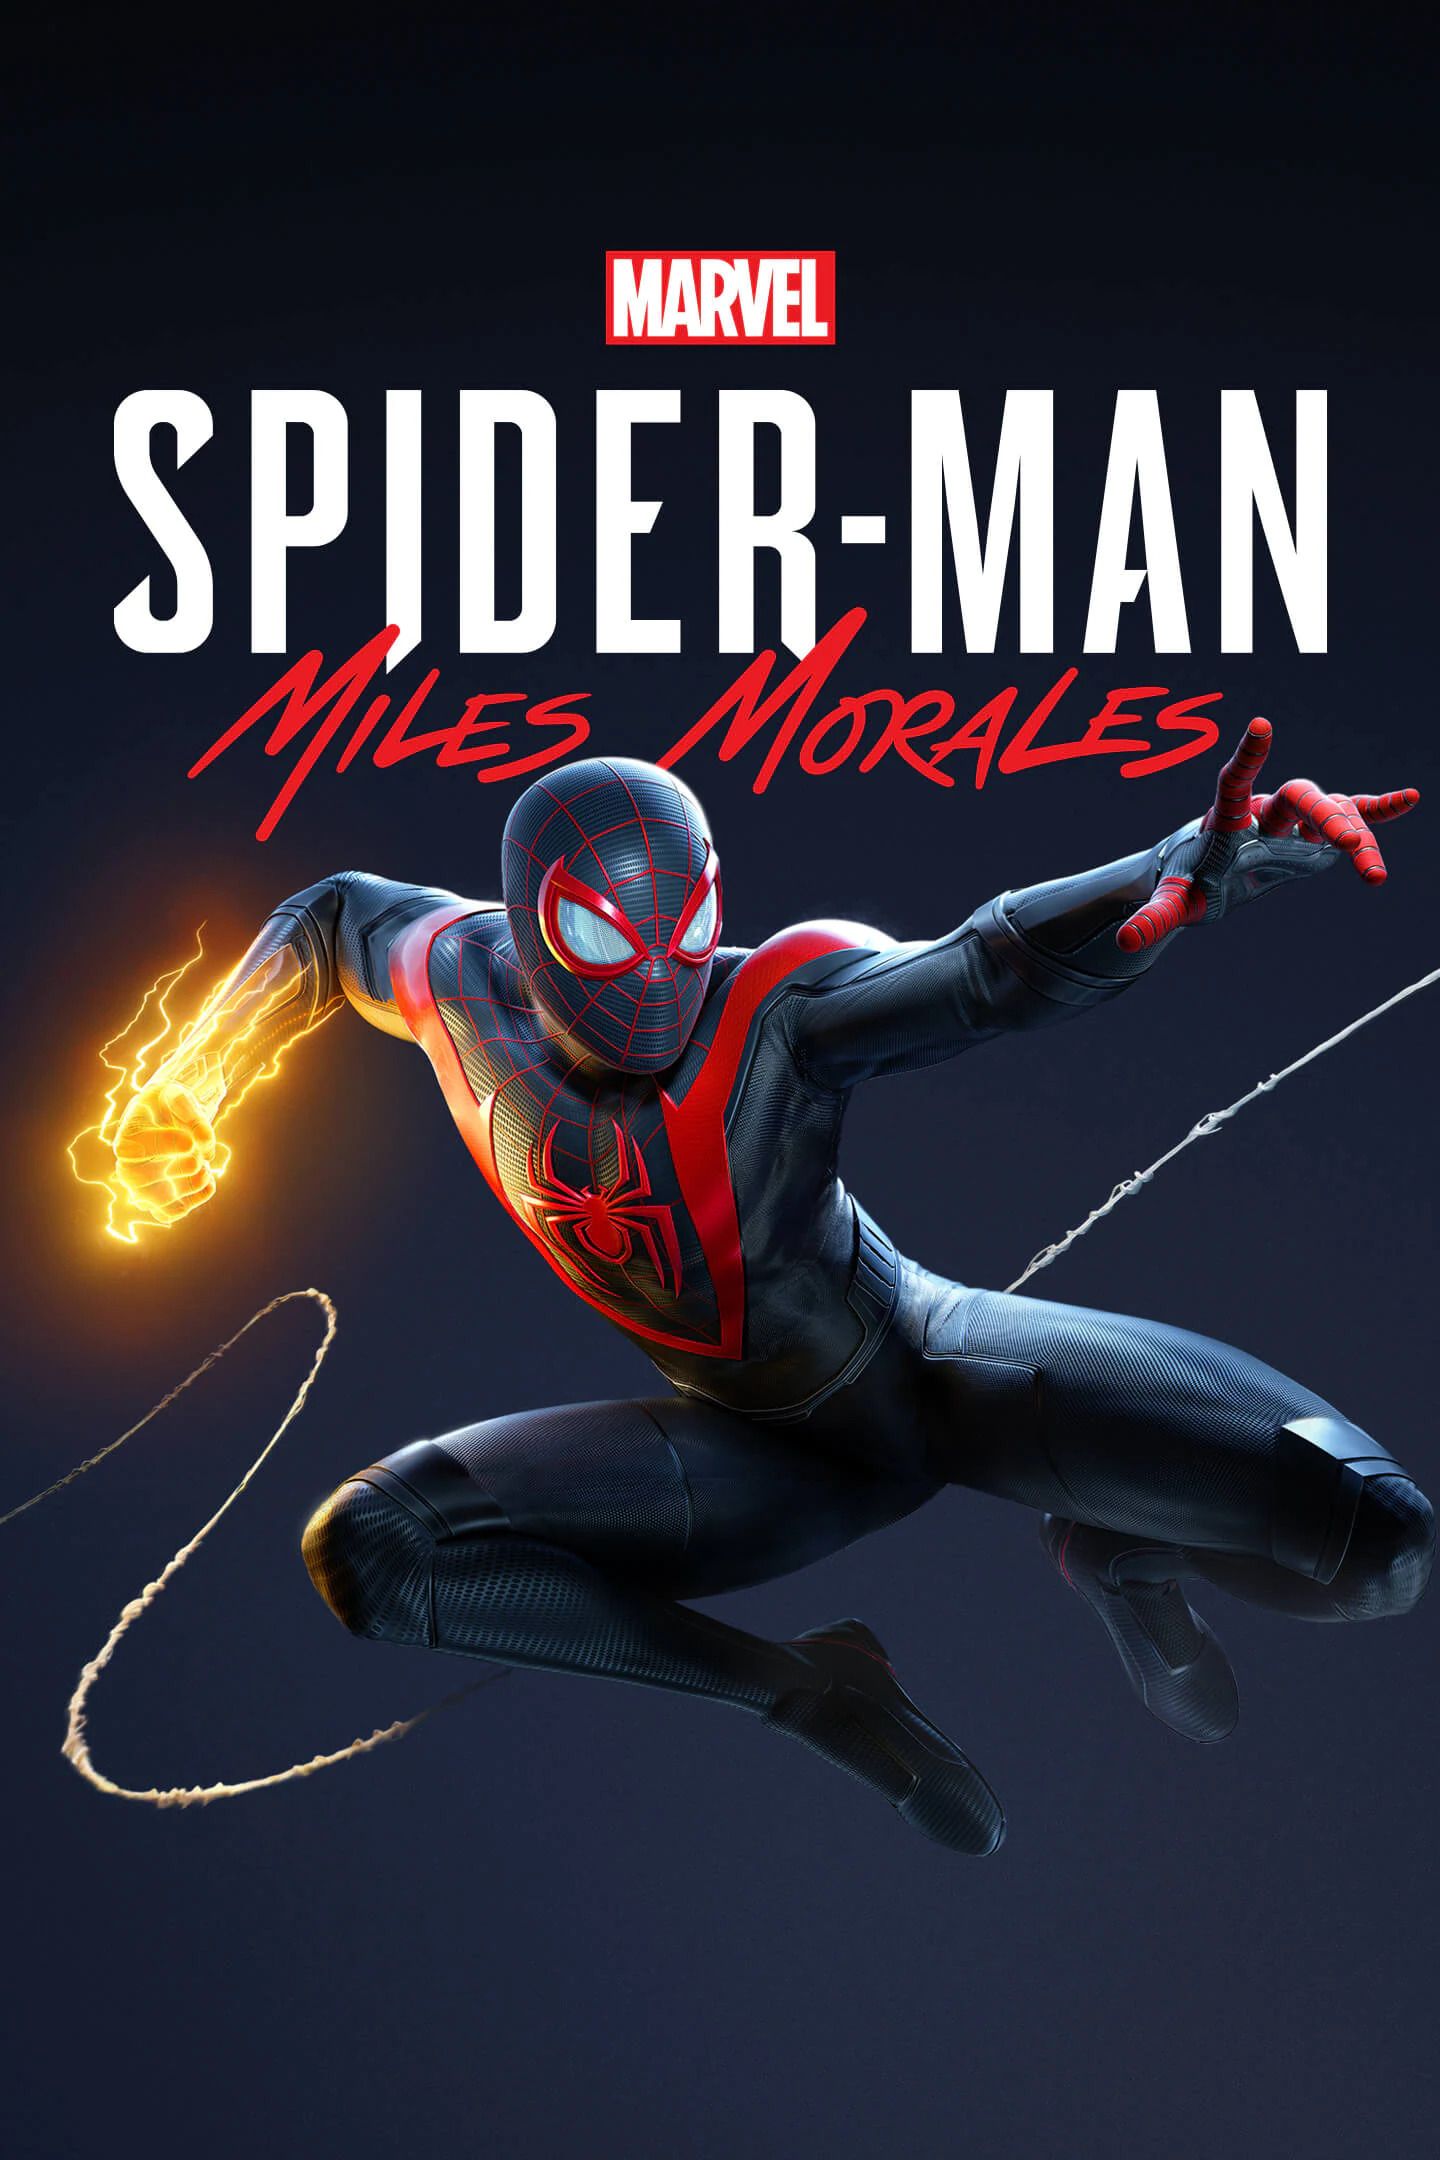 Spiderman - Miles Morales Steam Key Global | Steam Key - GLOBAL